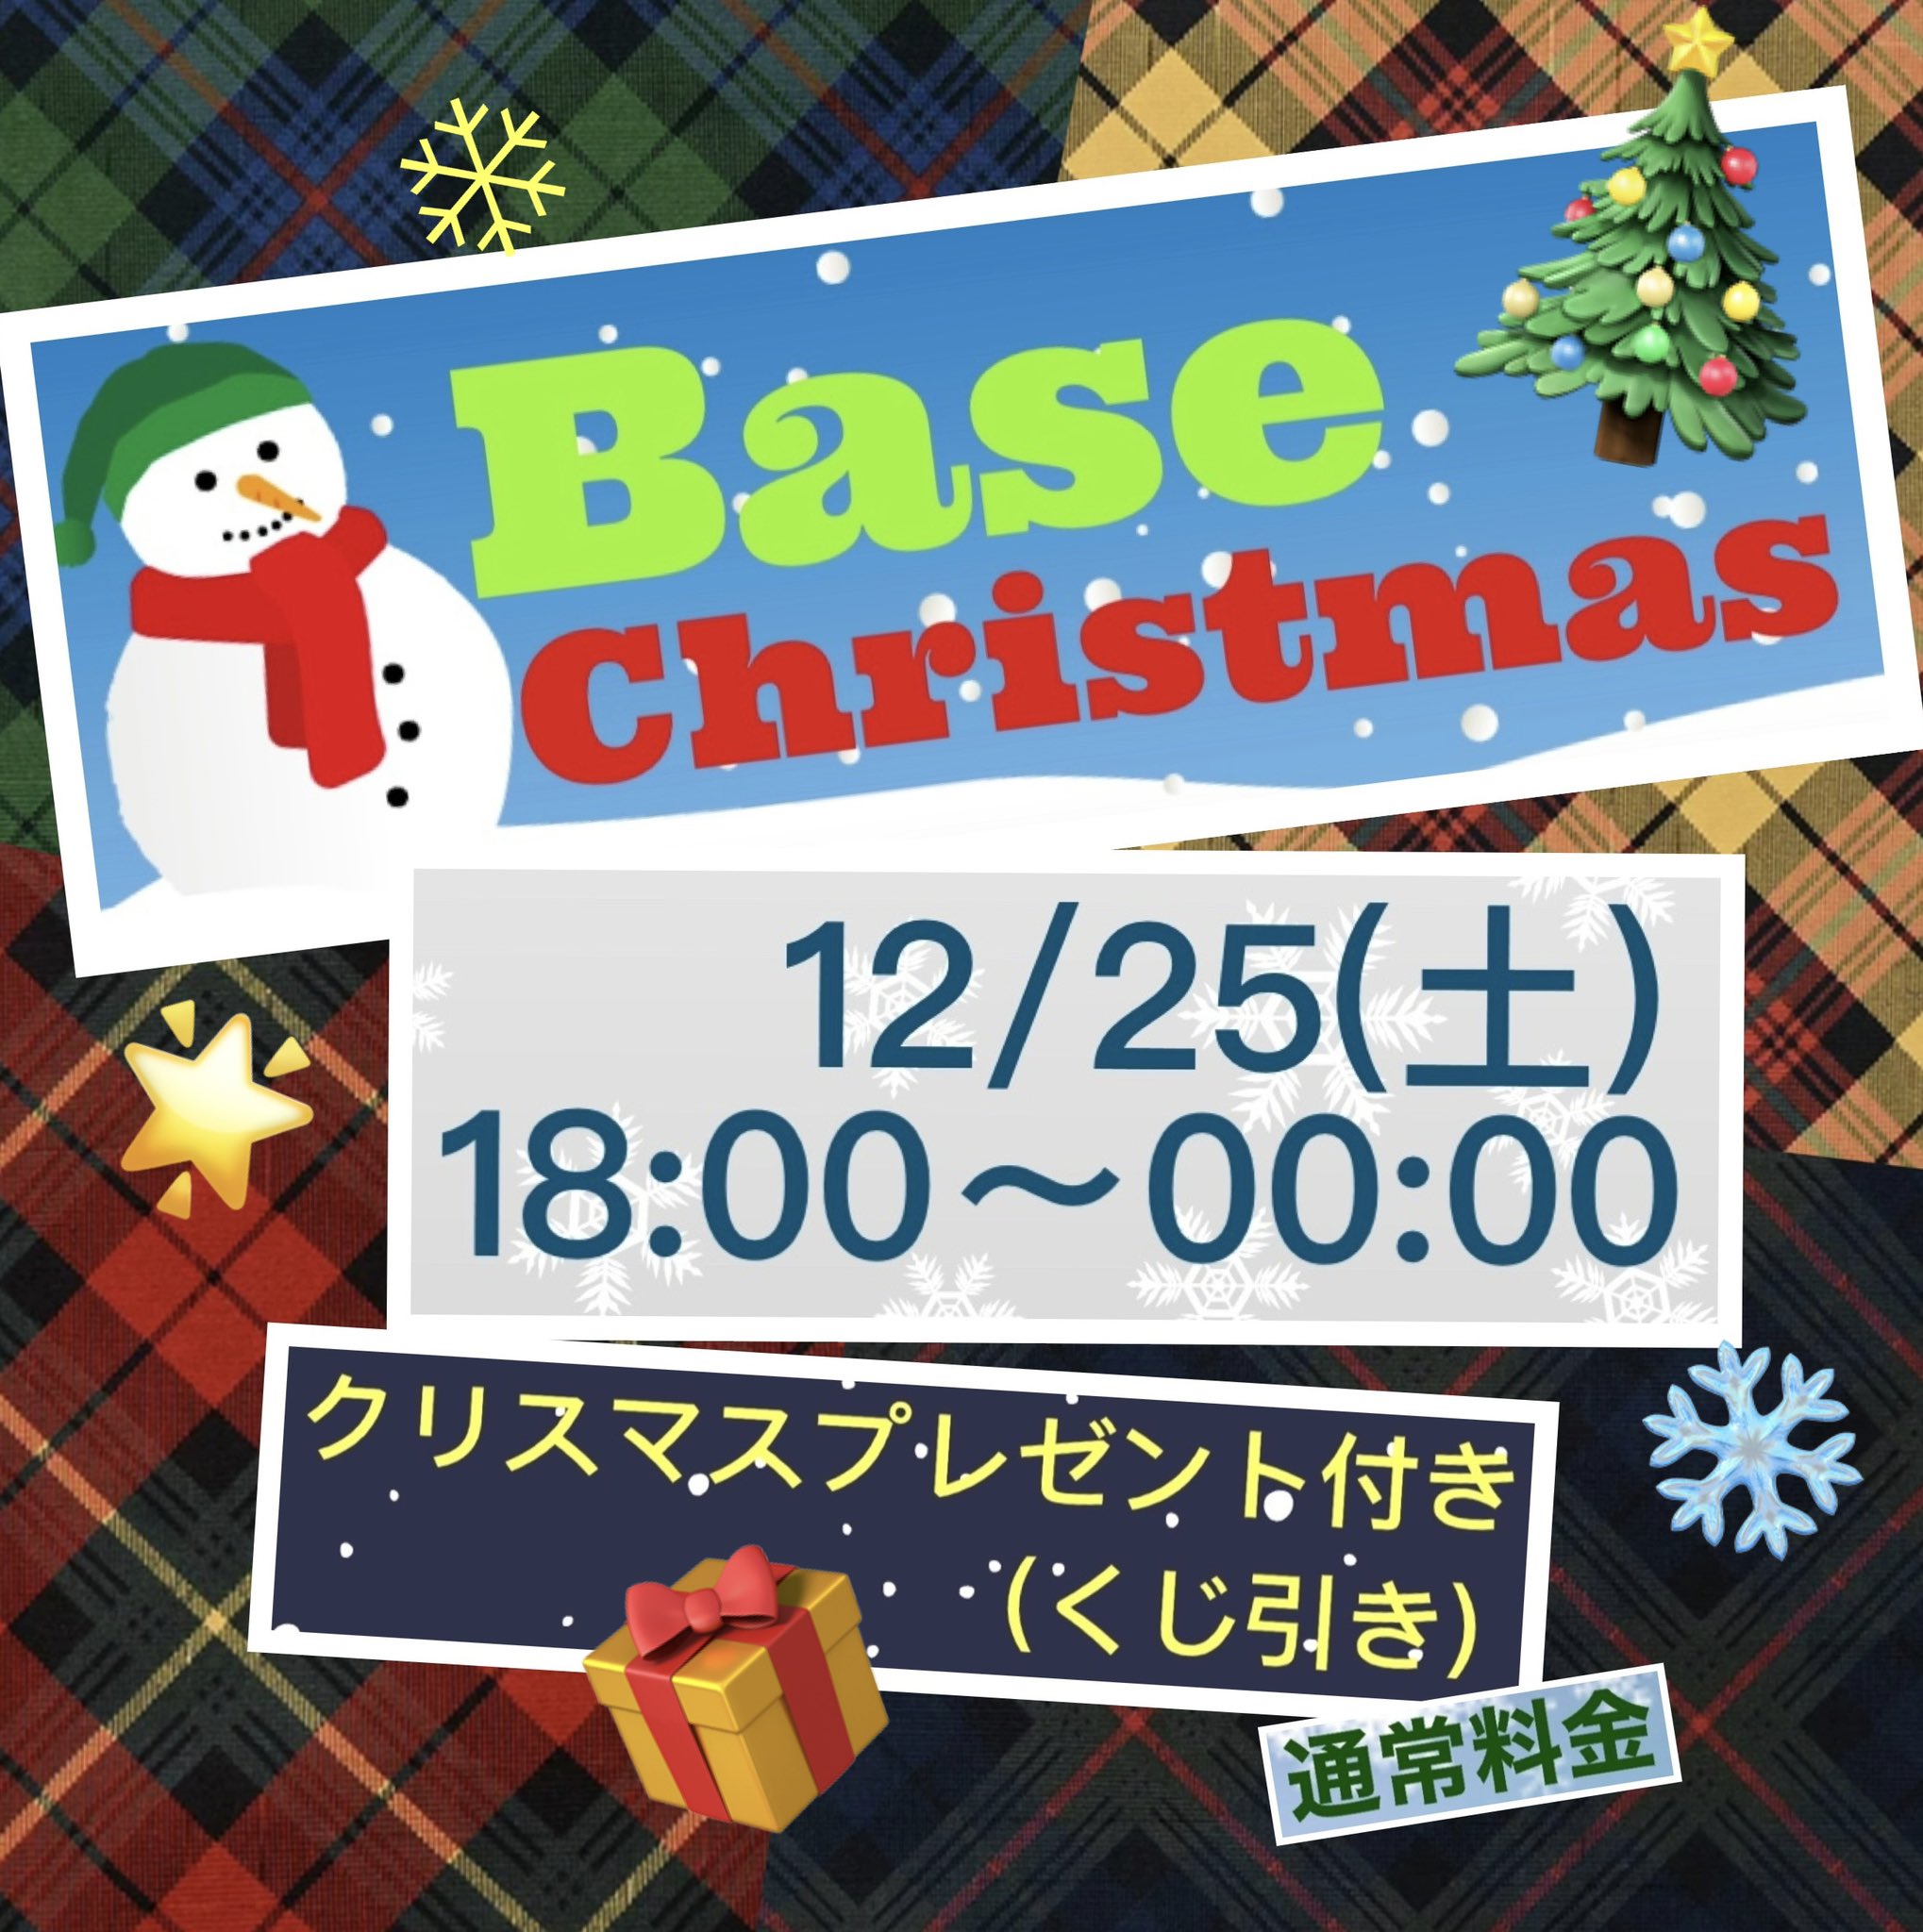 Base Christmas